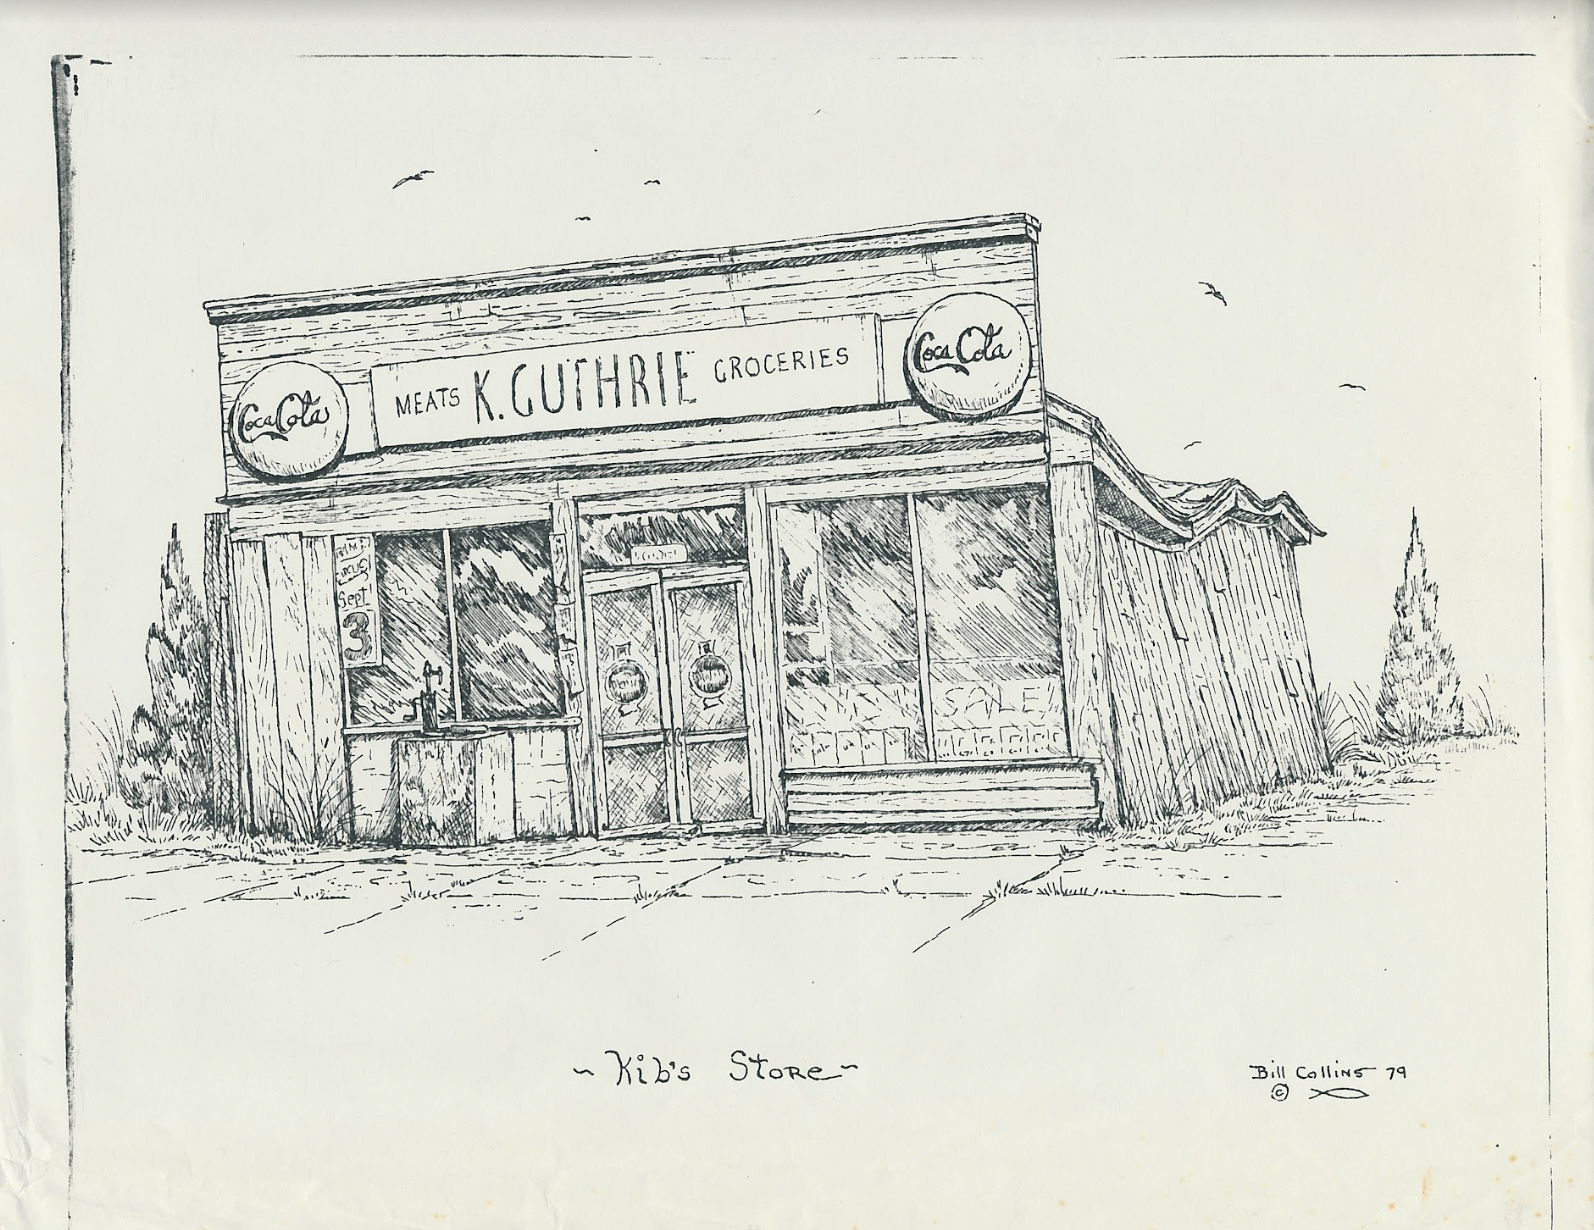 Bill Collins’ drawing of Kib’s Store